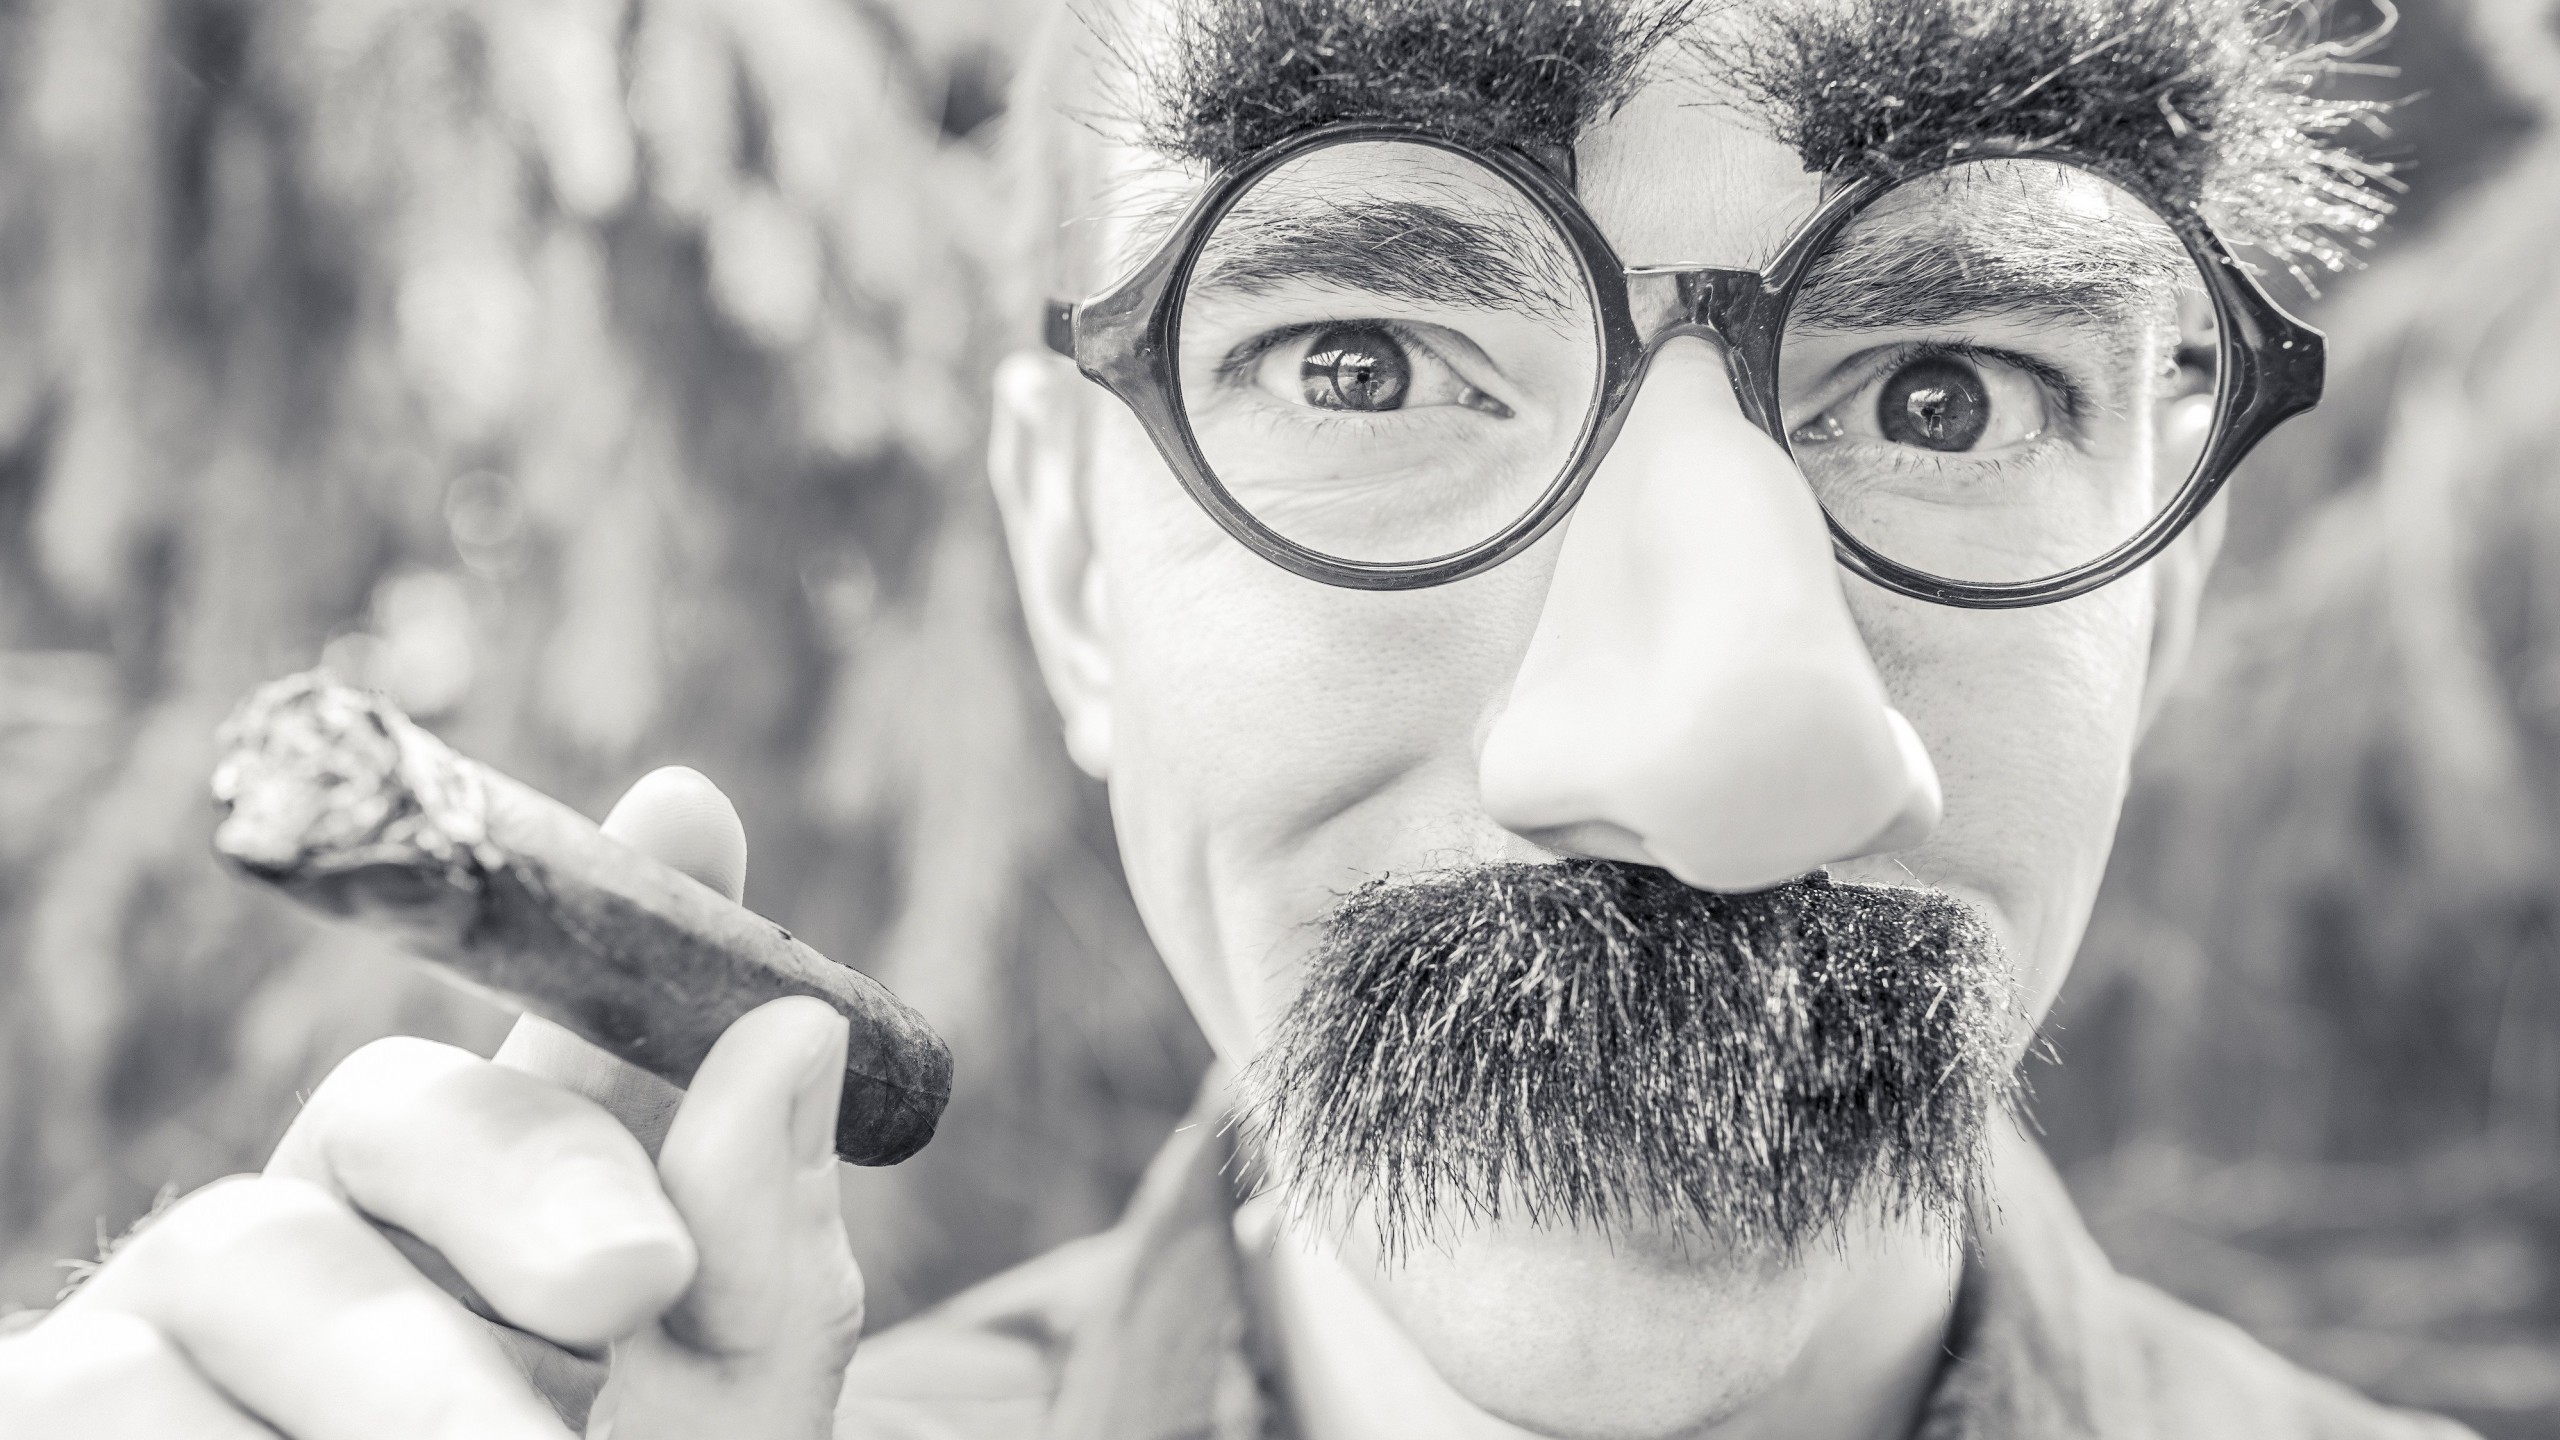 Groucho Glasses Man Wallpaper for Social Media YouTube Channel Art